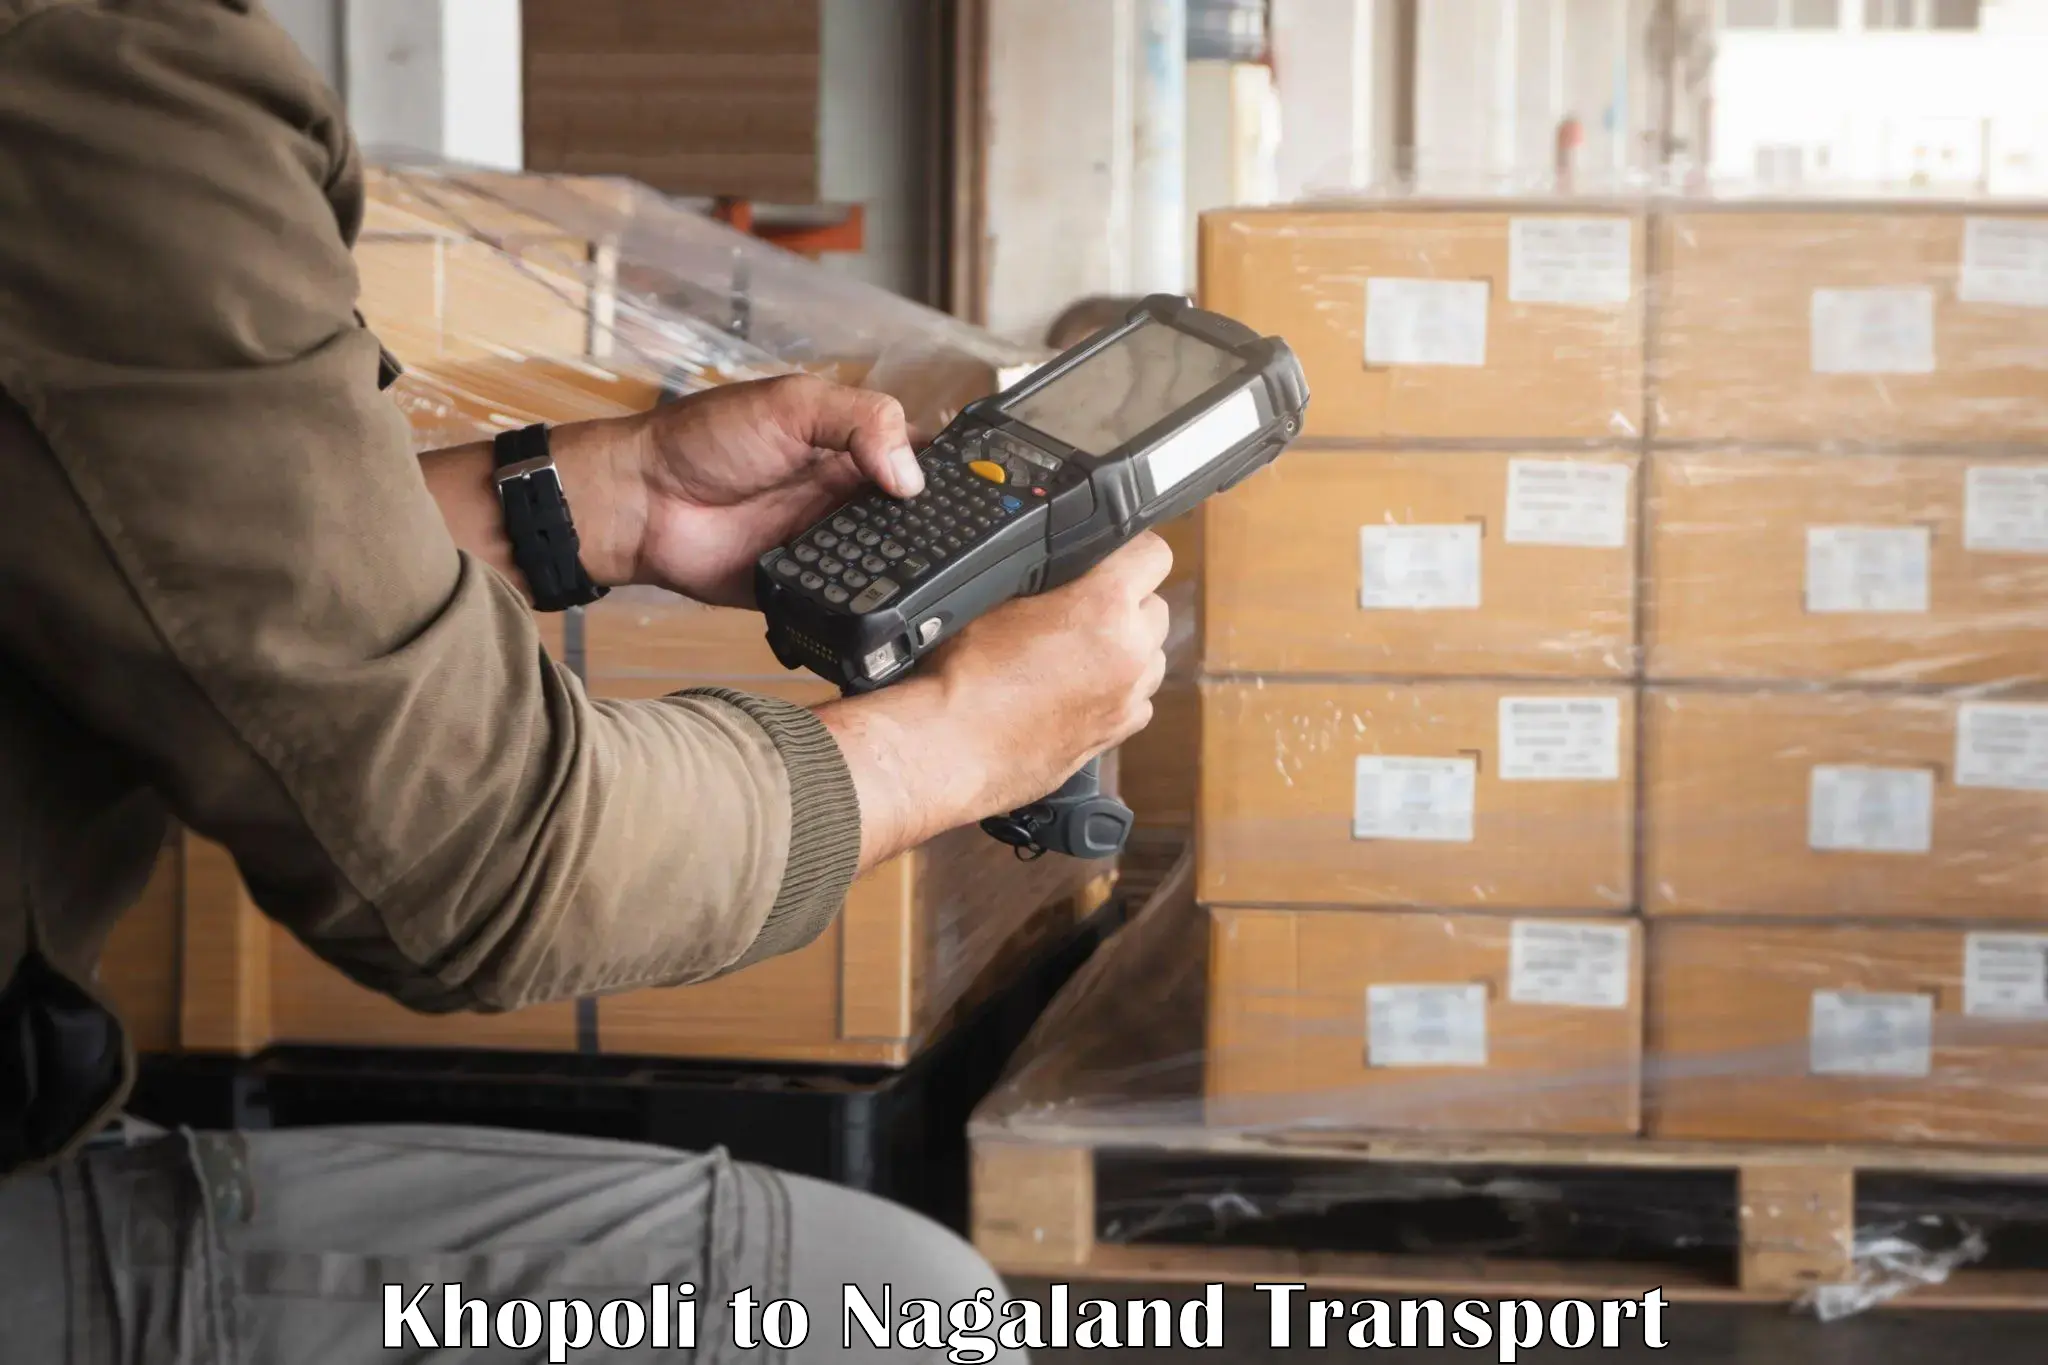 Daily parcel service transport Khopoli to Wokha